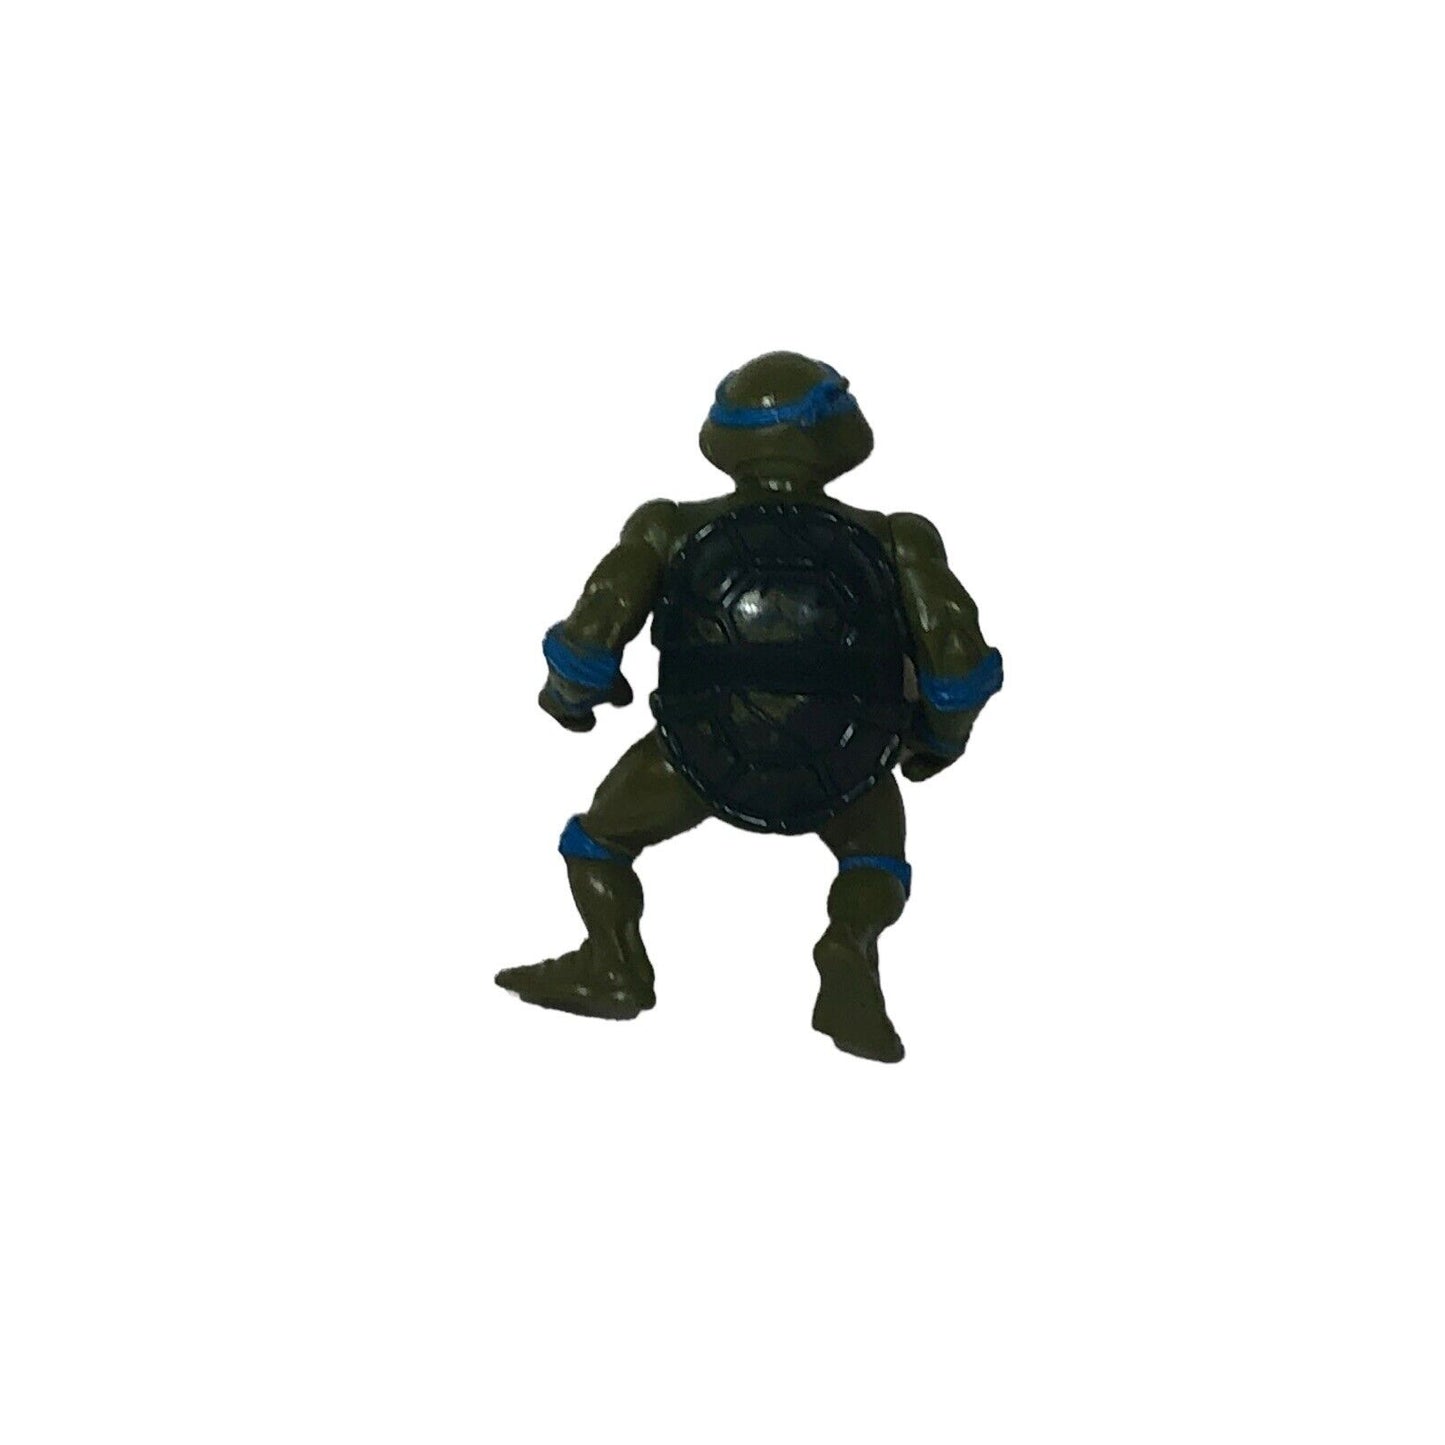 Vintage 1988 Teenage Mutant Ninja Turtles TMNT Leonardo Action Figure Playmates